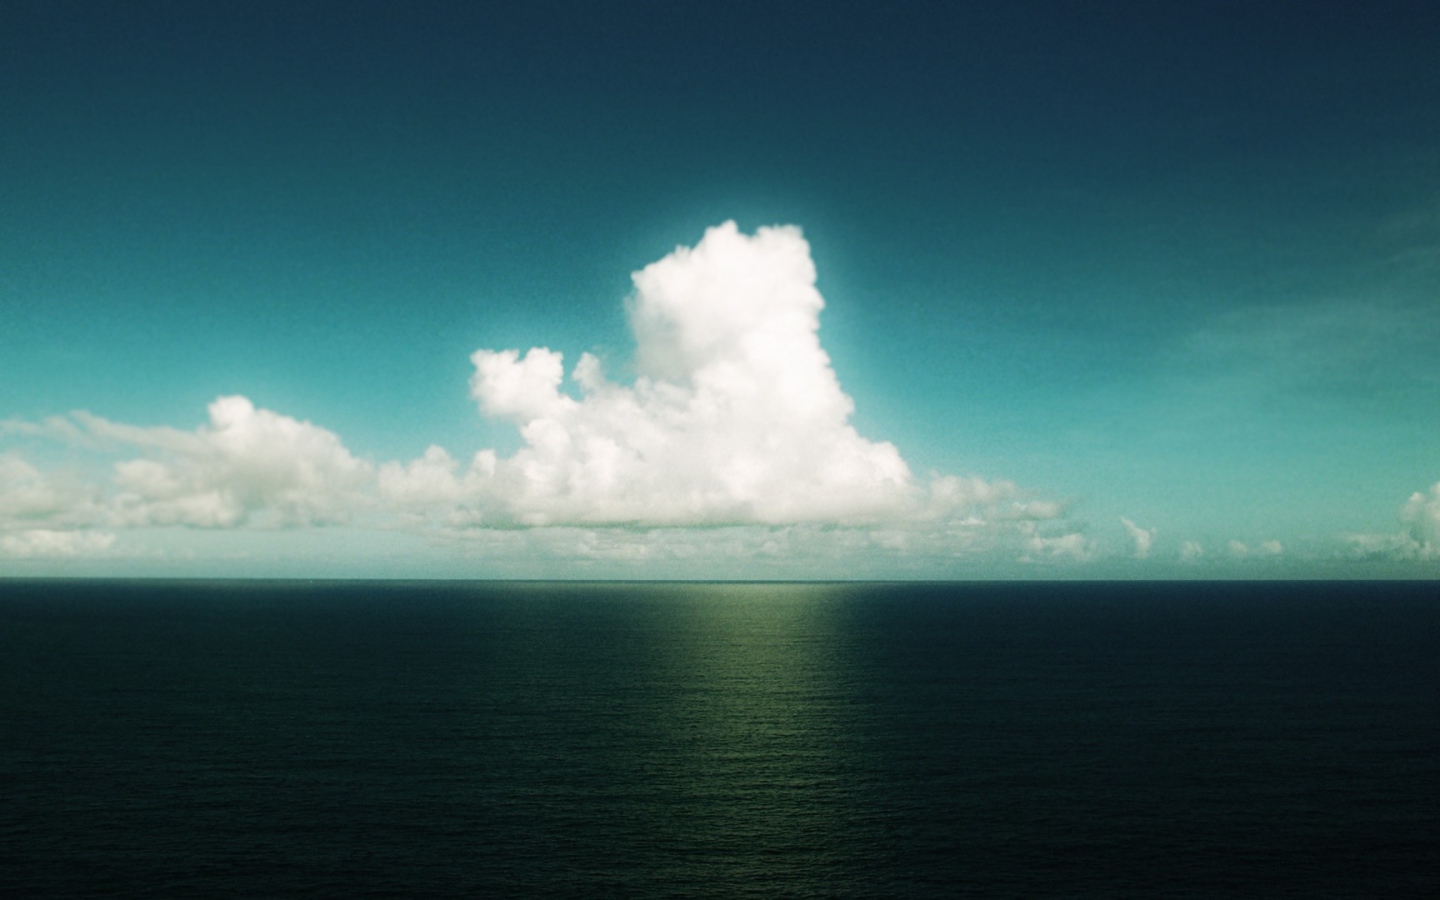 Одинокое облако над морем